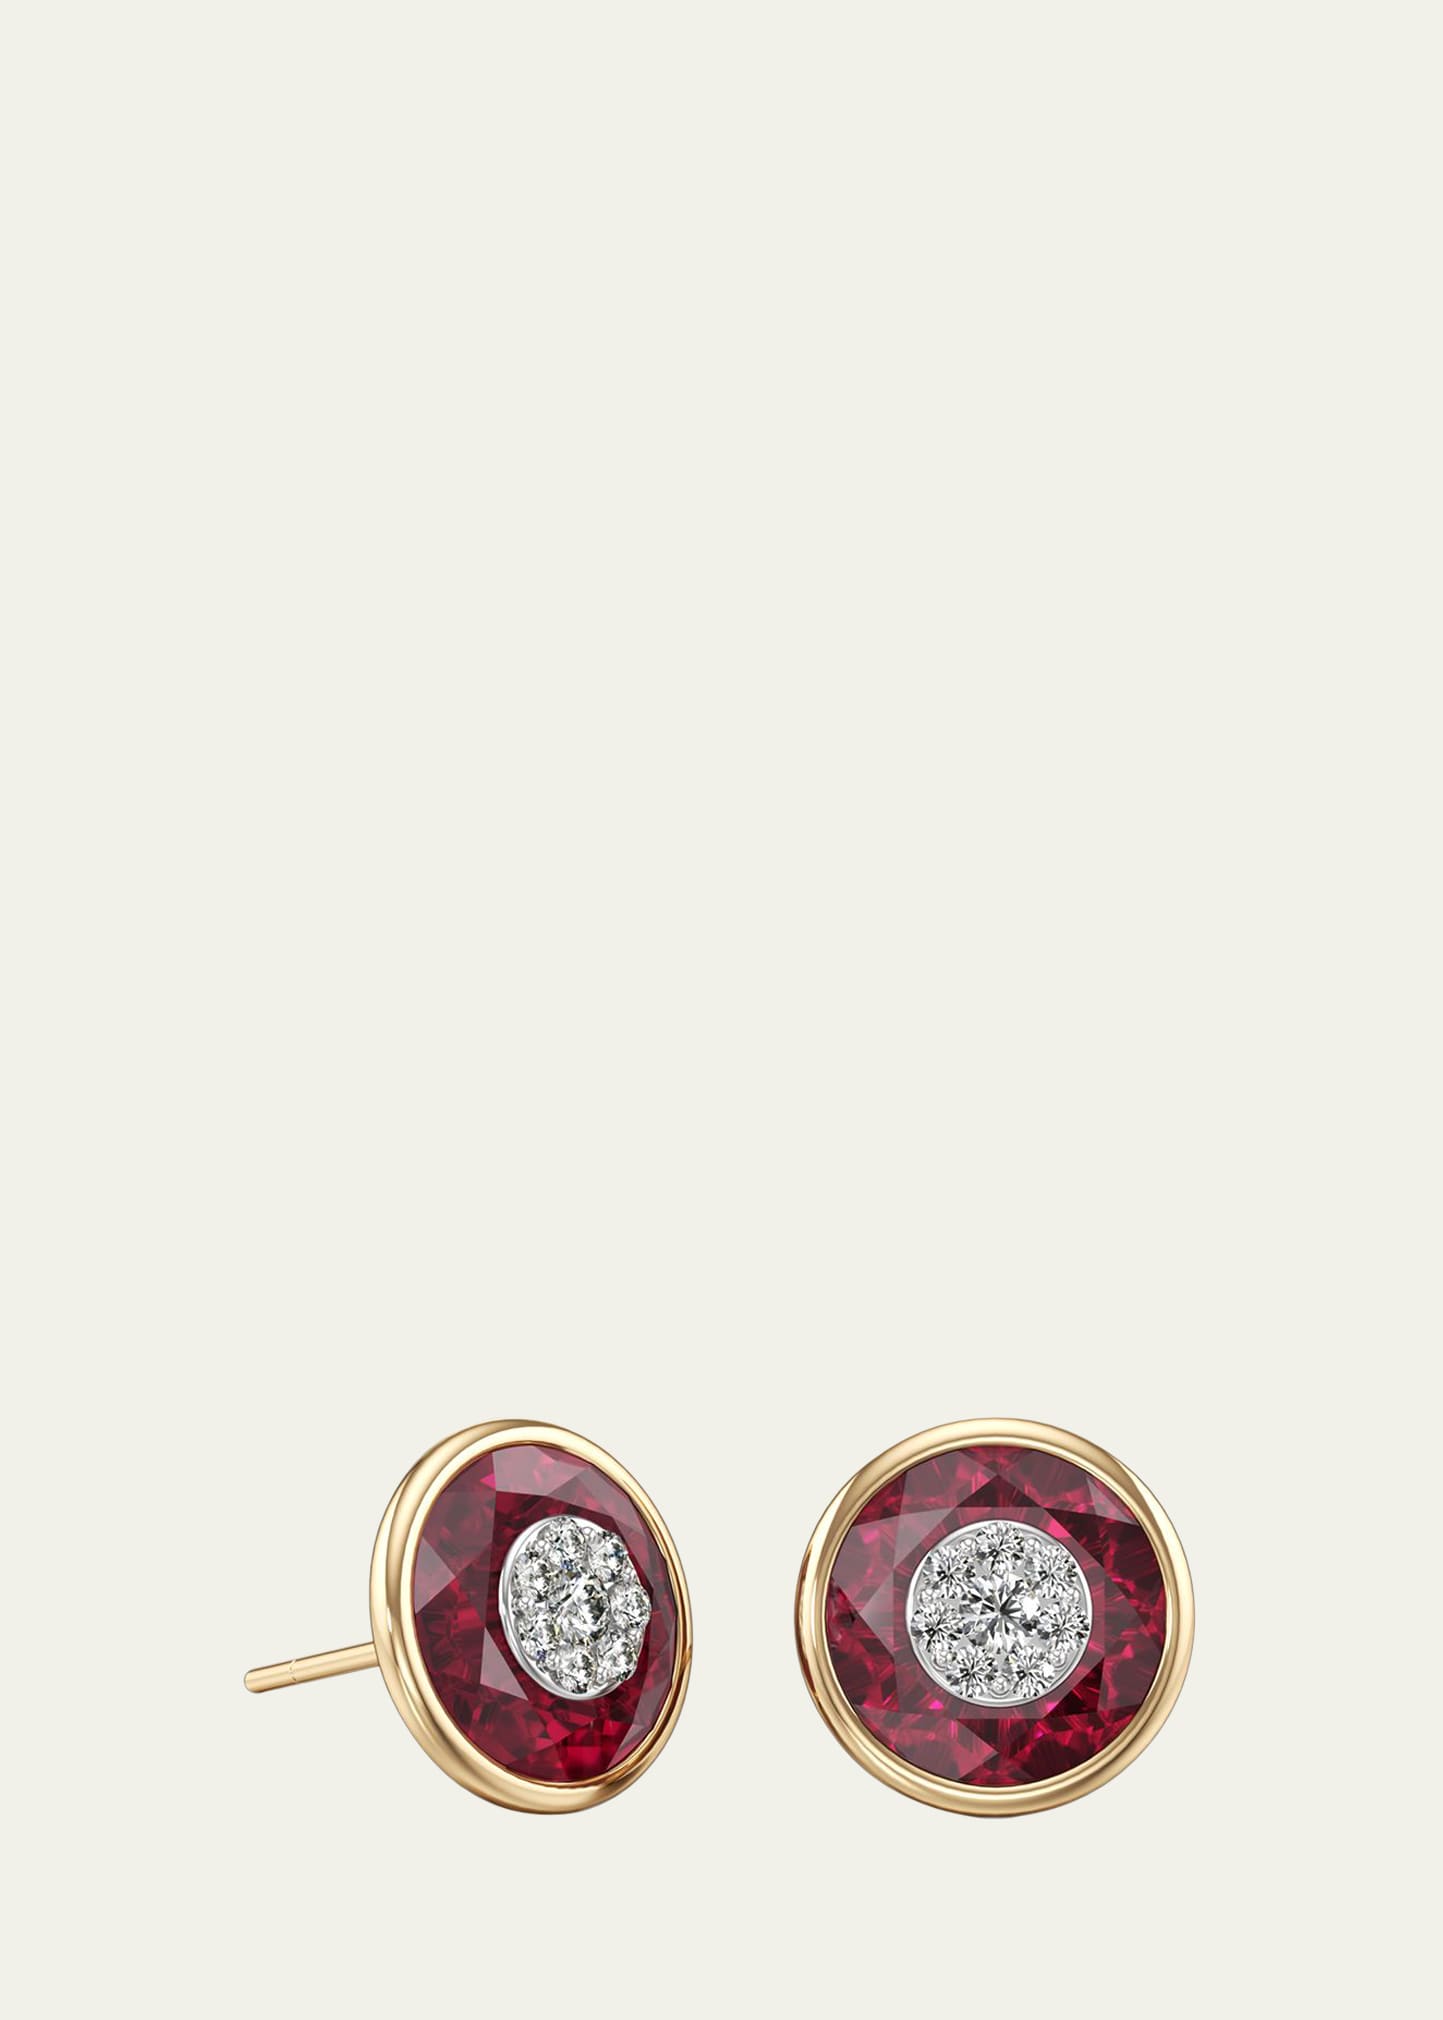 Bhansali 18k Stone and Brilliant Diamond Stud Earrings, 10mm